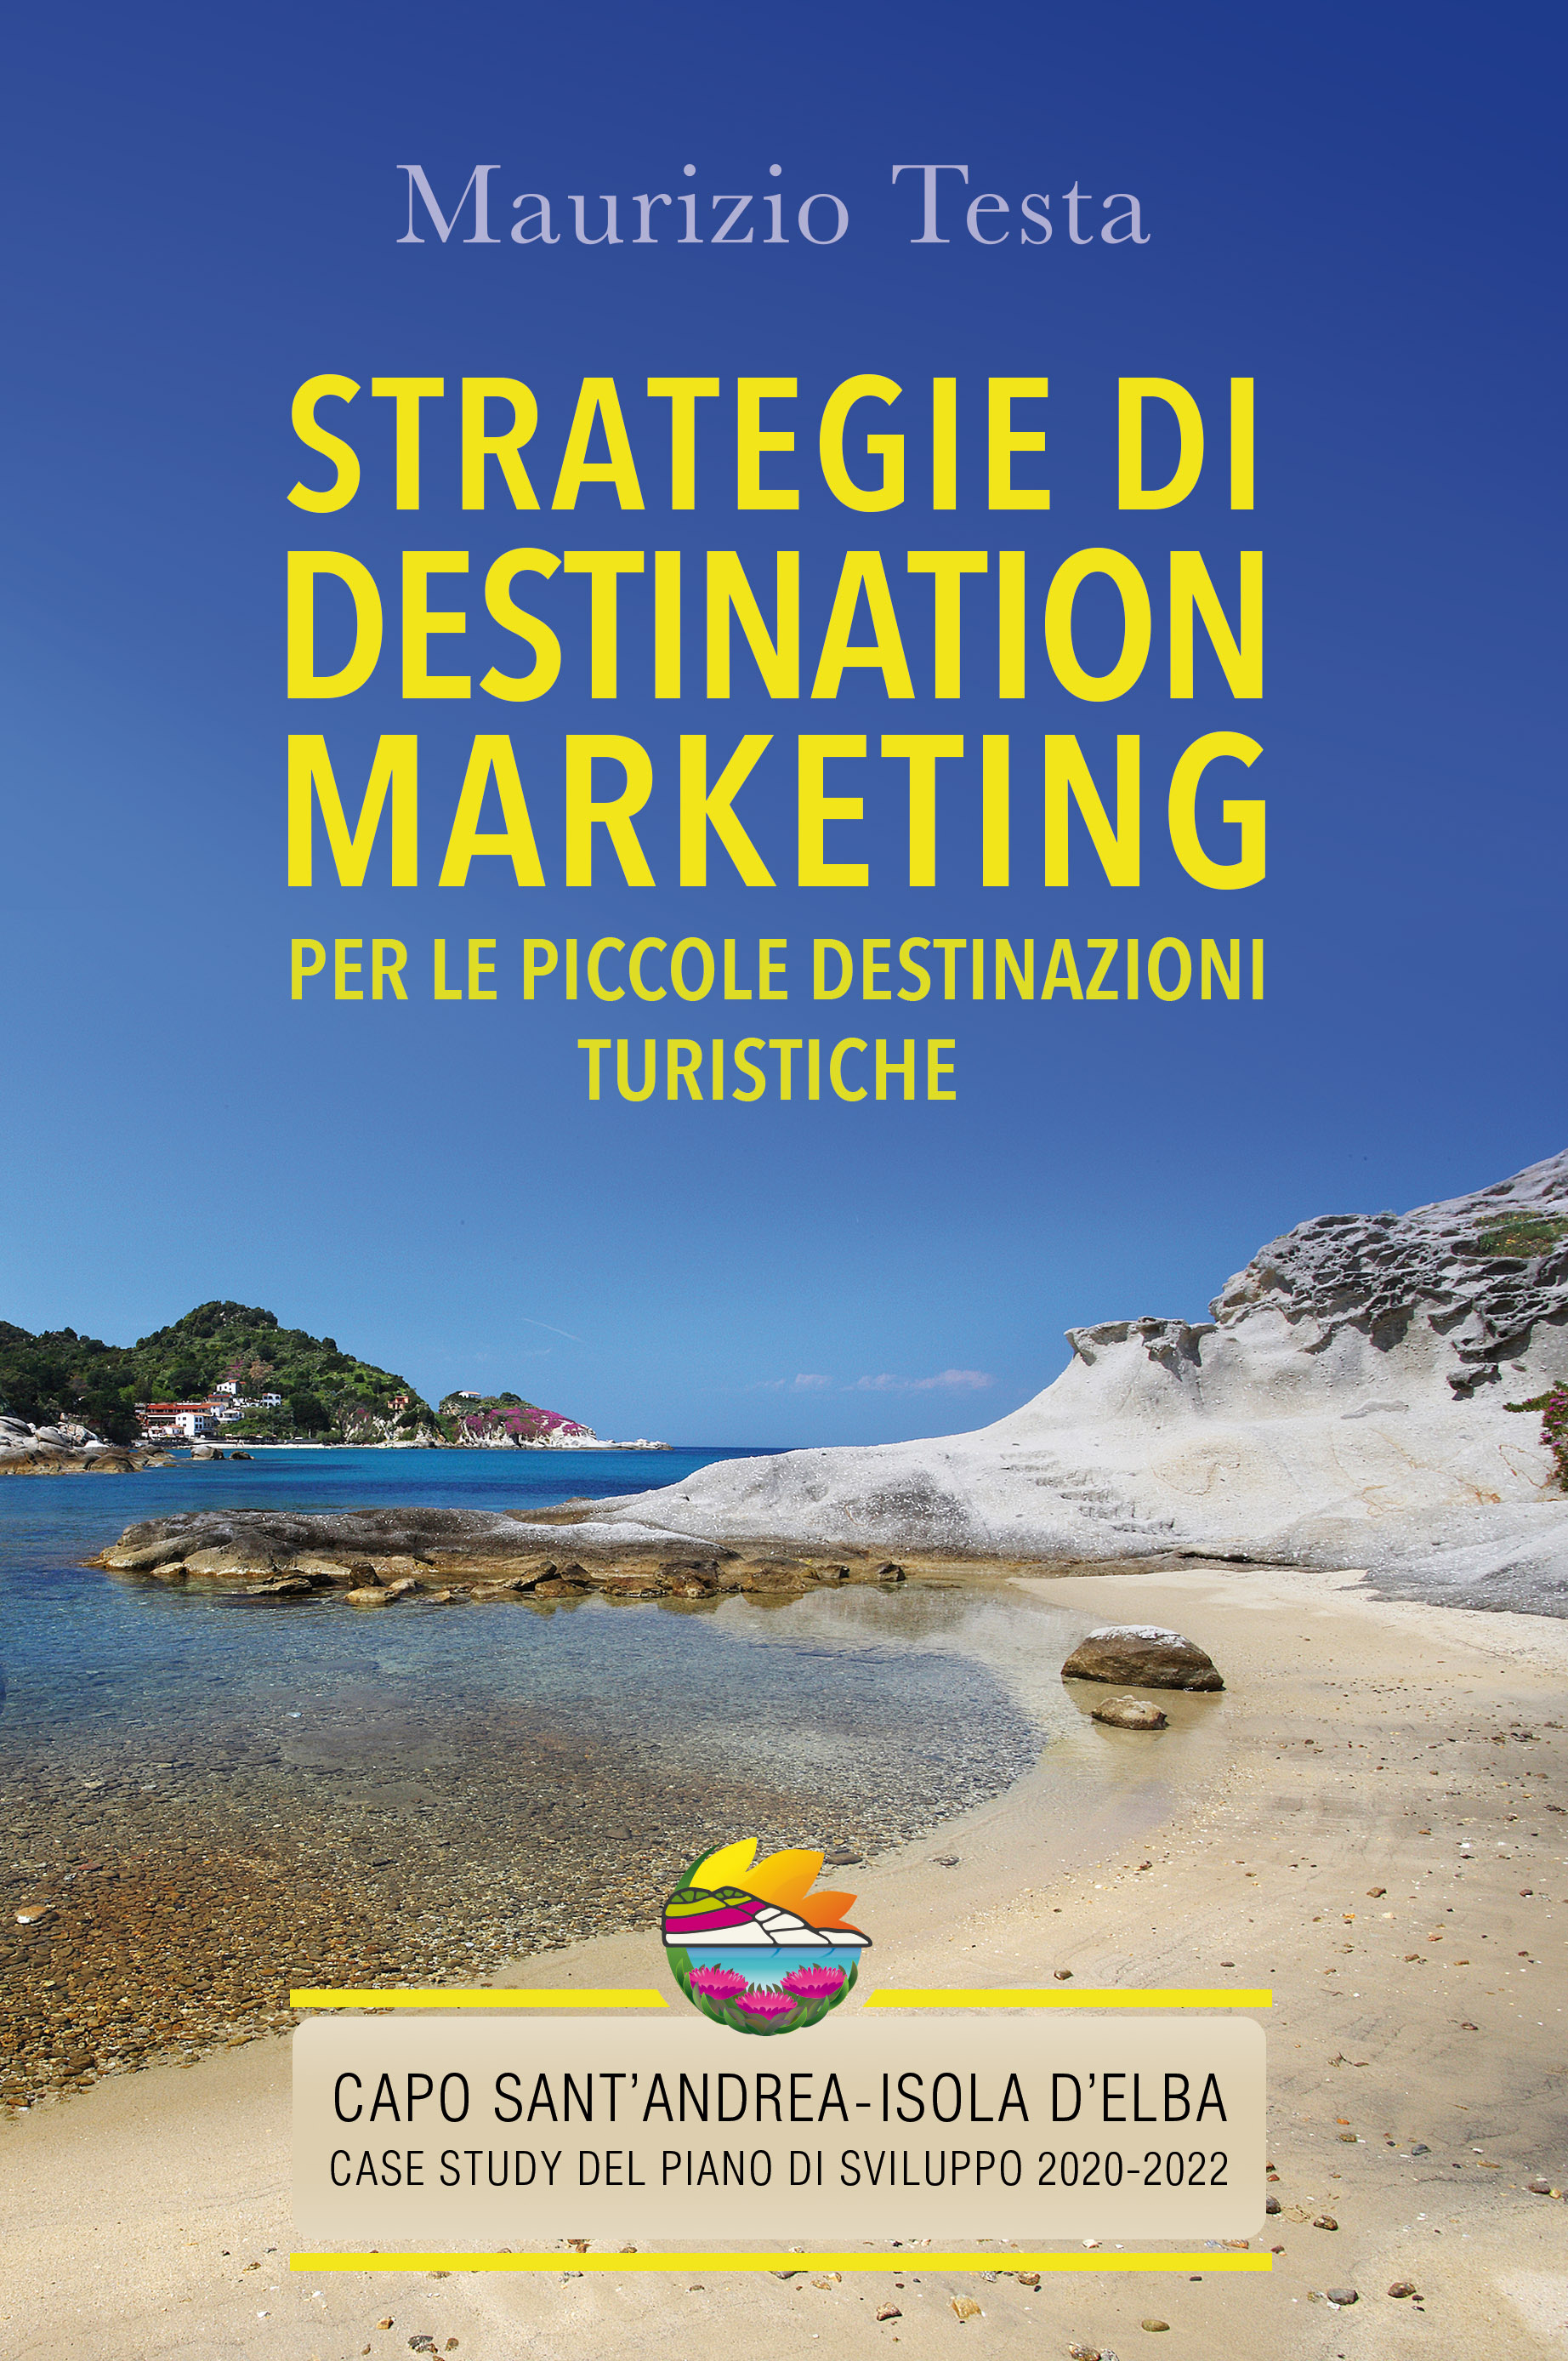 Strategie di Destination Marketing per le Piccole Destinazioni Turistiche